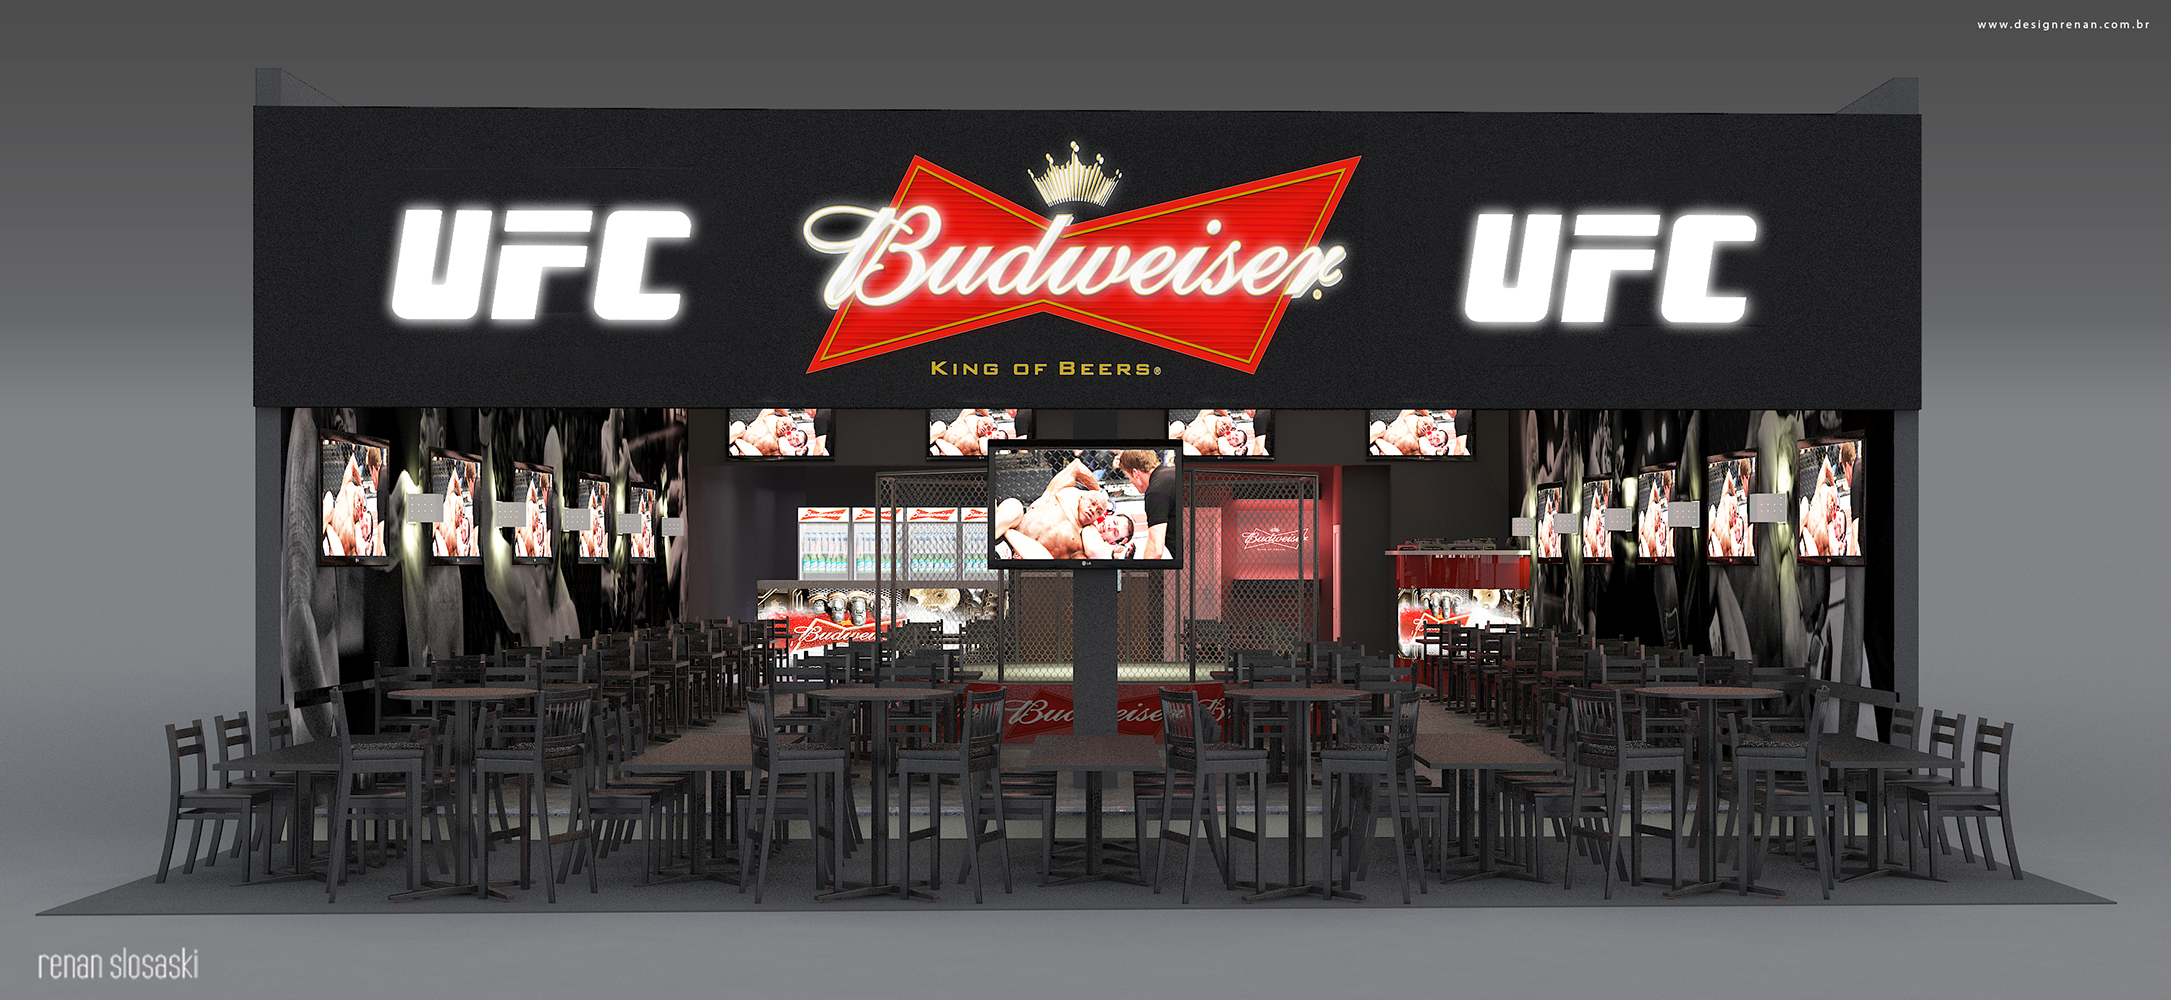 ufc-bar-and-restaurant-design-budweiser